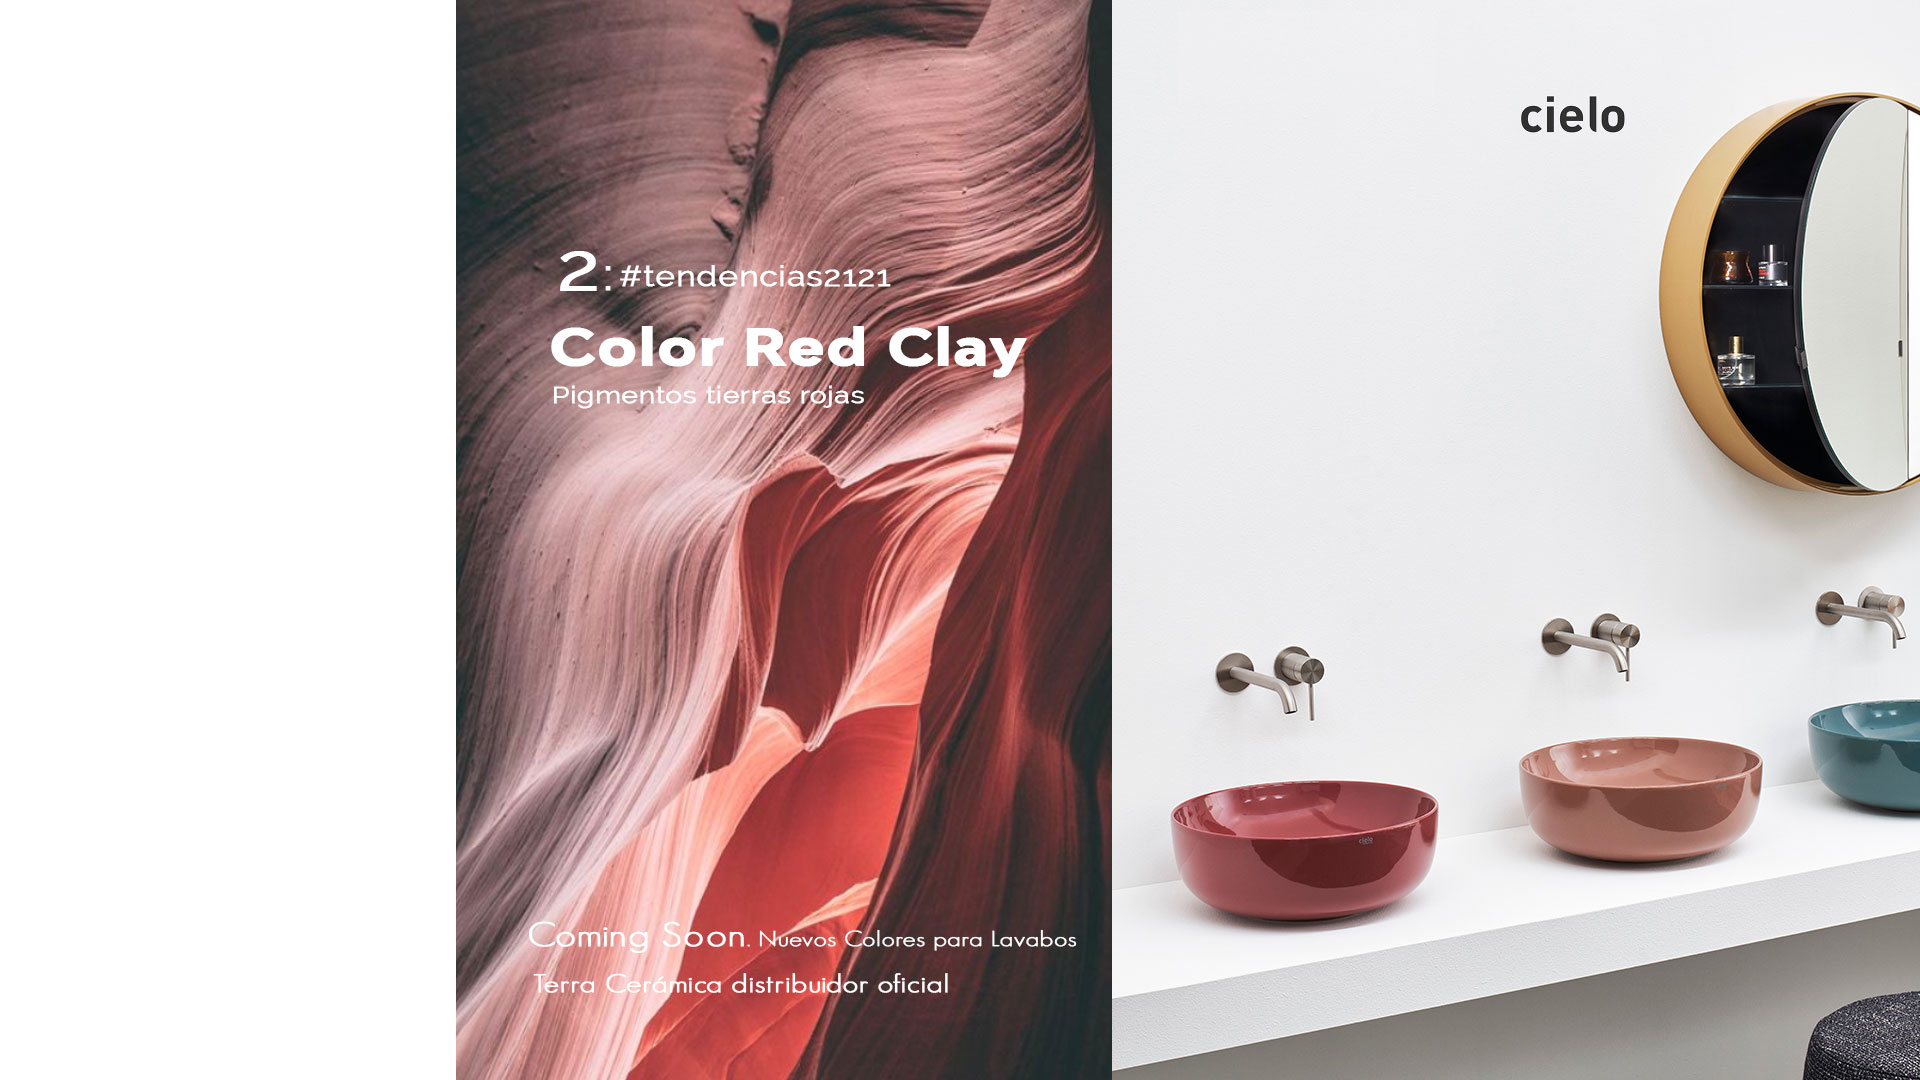 Color Red Clay, el color tendencia que llega a los lavabos.